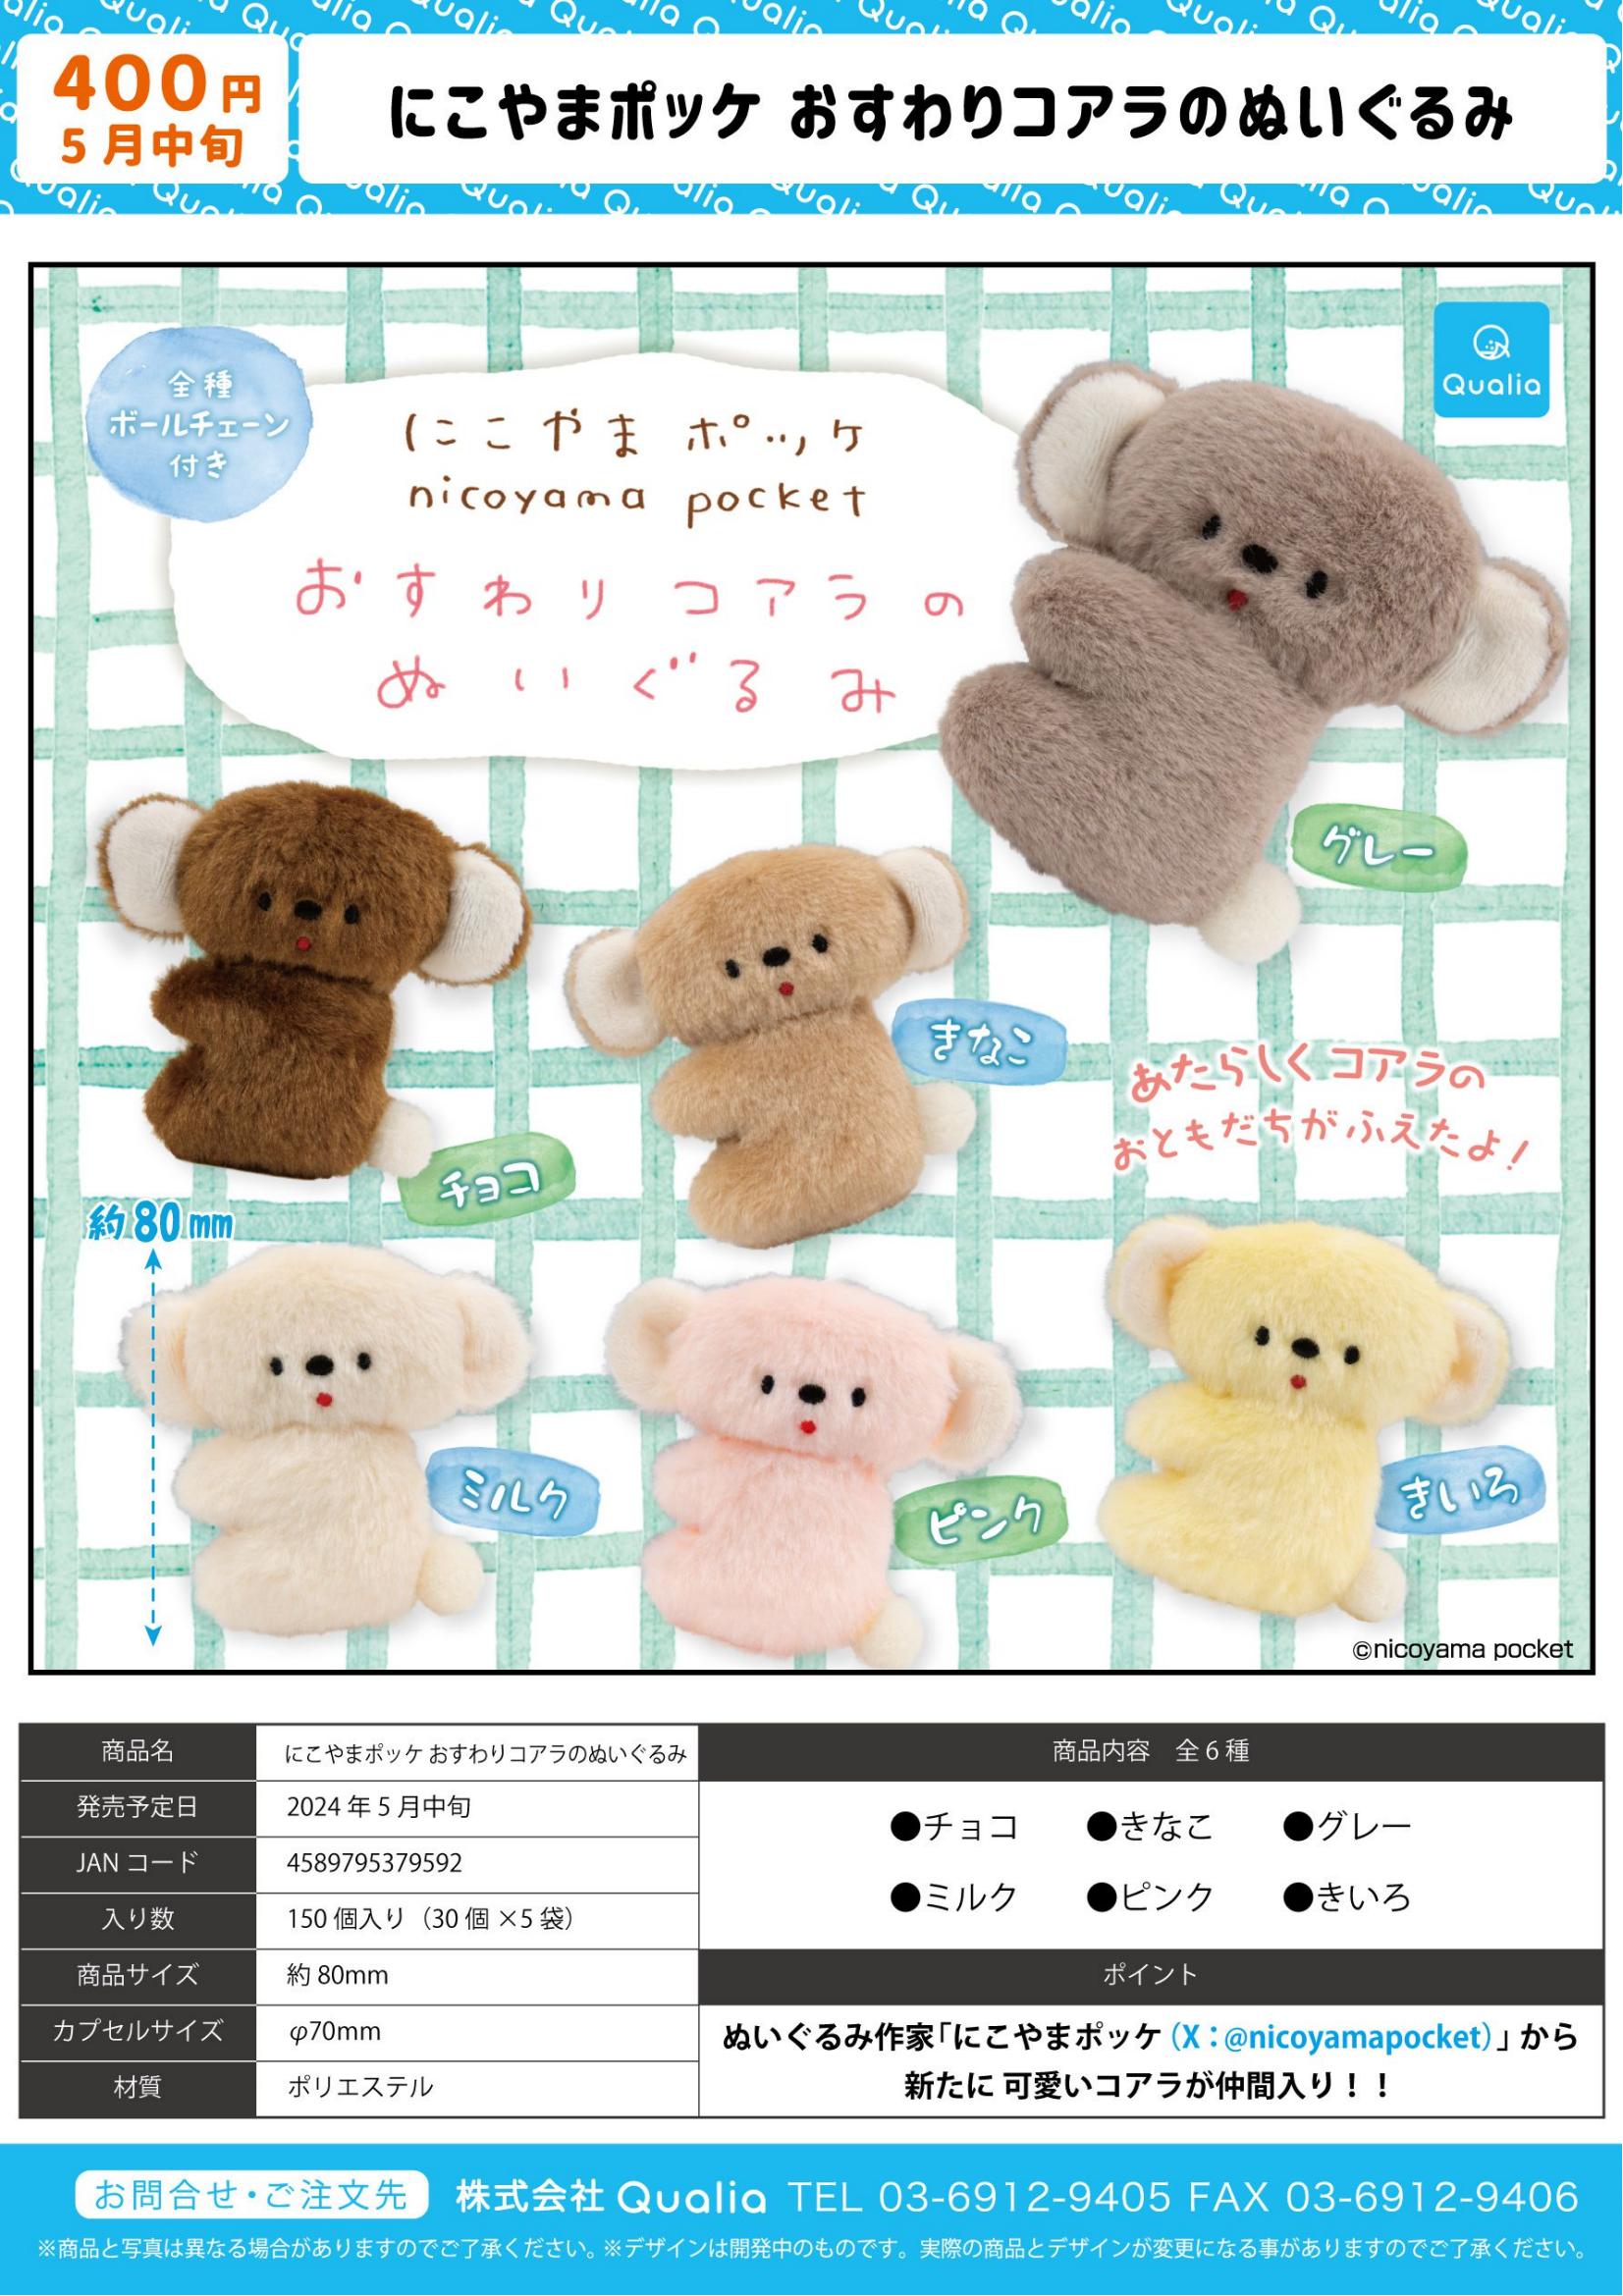 虾壳社预售日本QUALIA扭蛋考拉毛绒树袋熊 nicoyama pocket玩偶